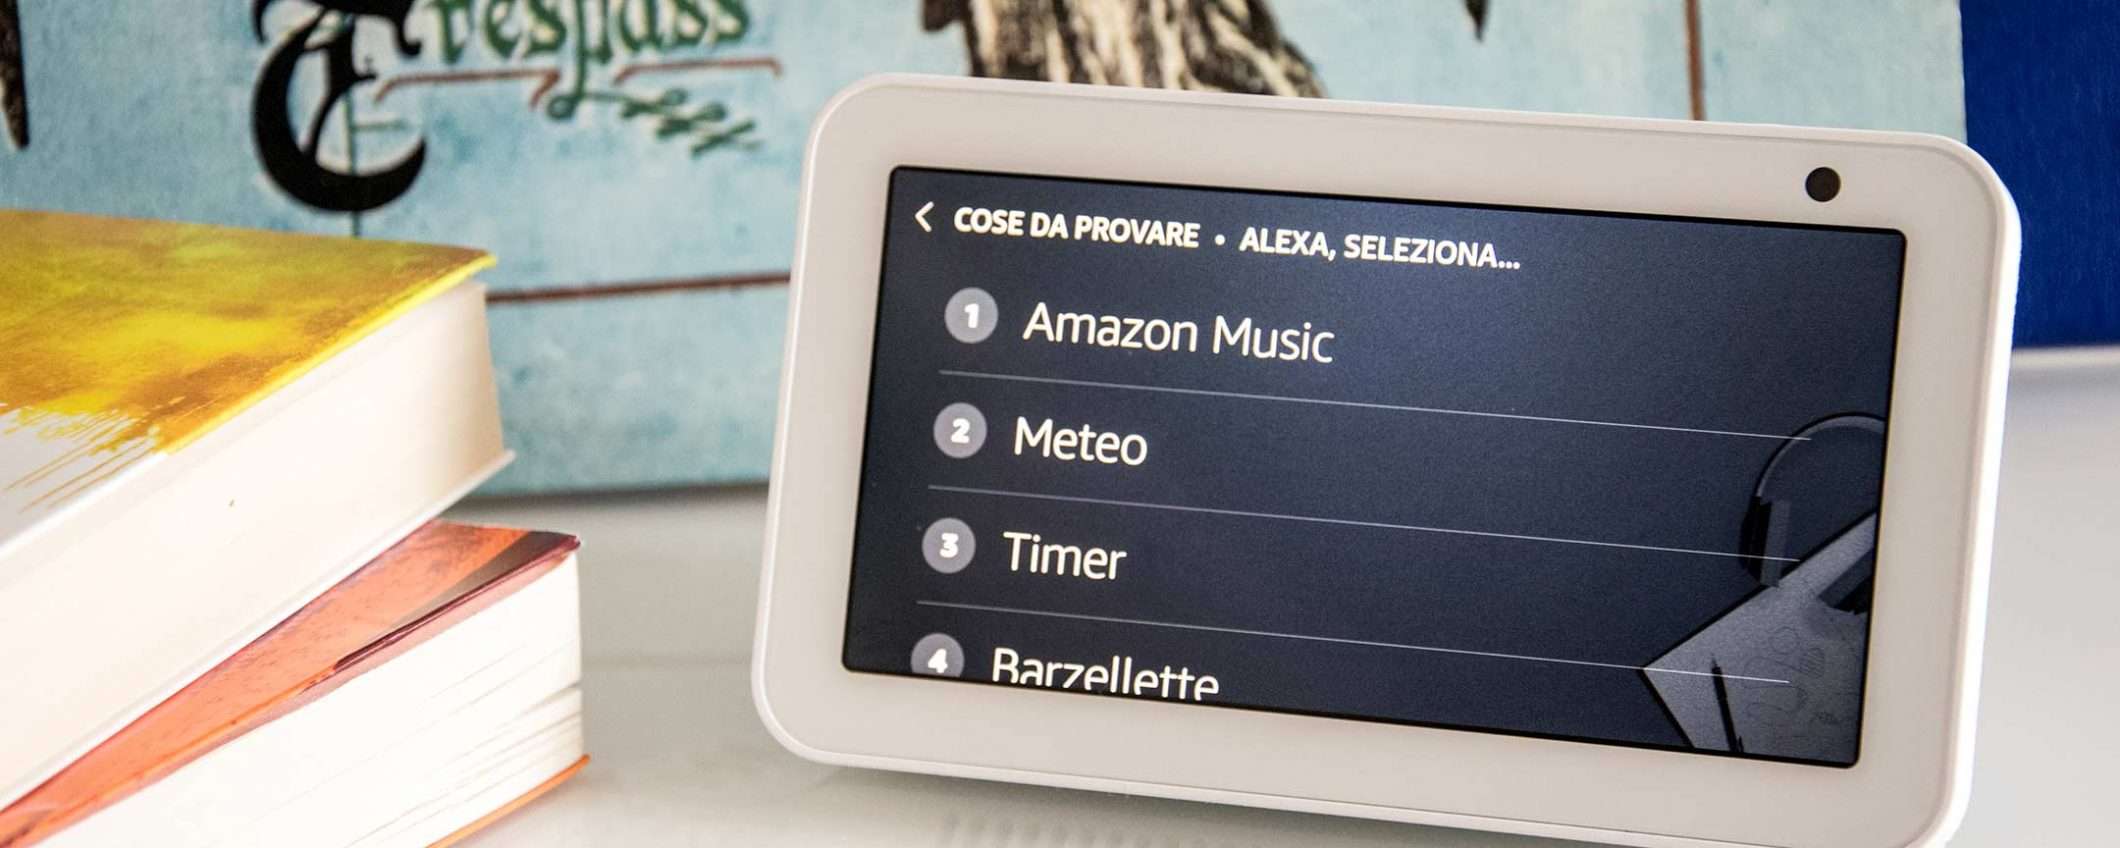 Prime Day 2019: tutti gli Amazon Echo in offerta